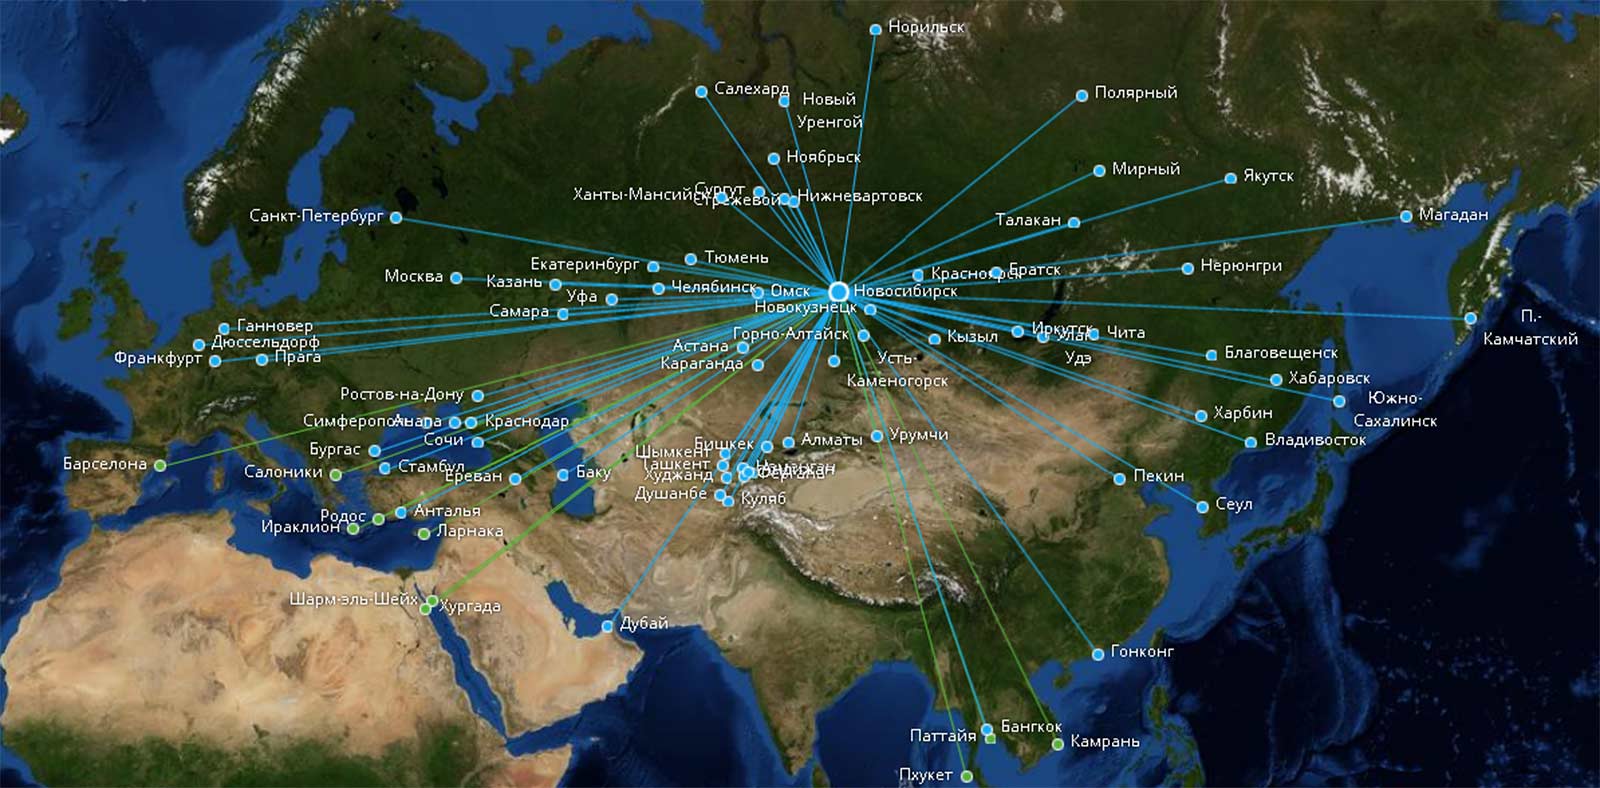 Список направлений аэрофлота - list of aeroflot destinations - abcdef.wiki